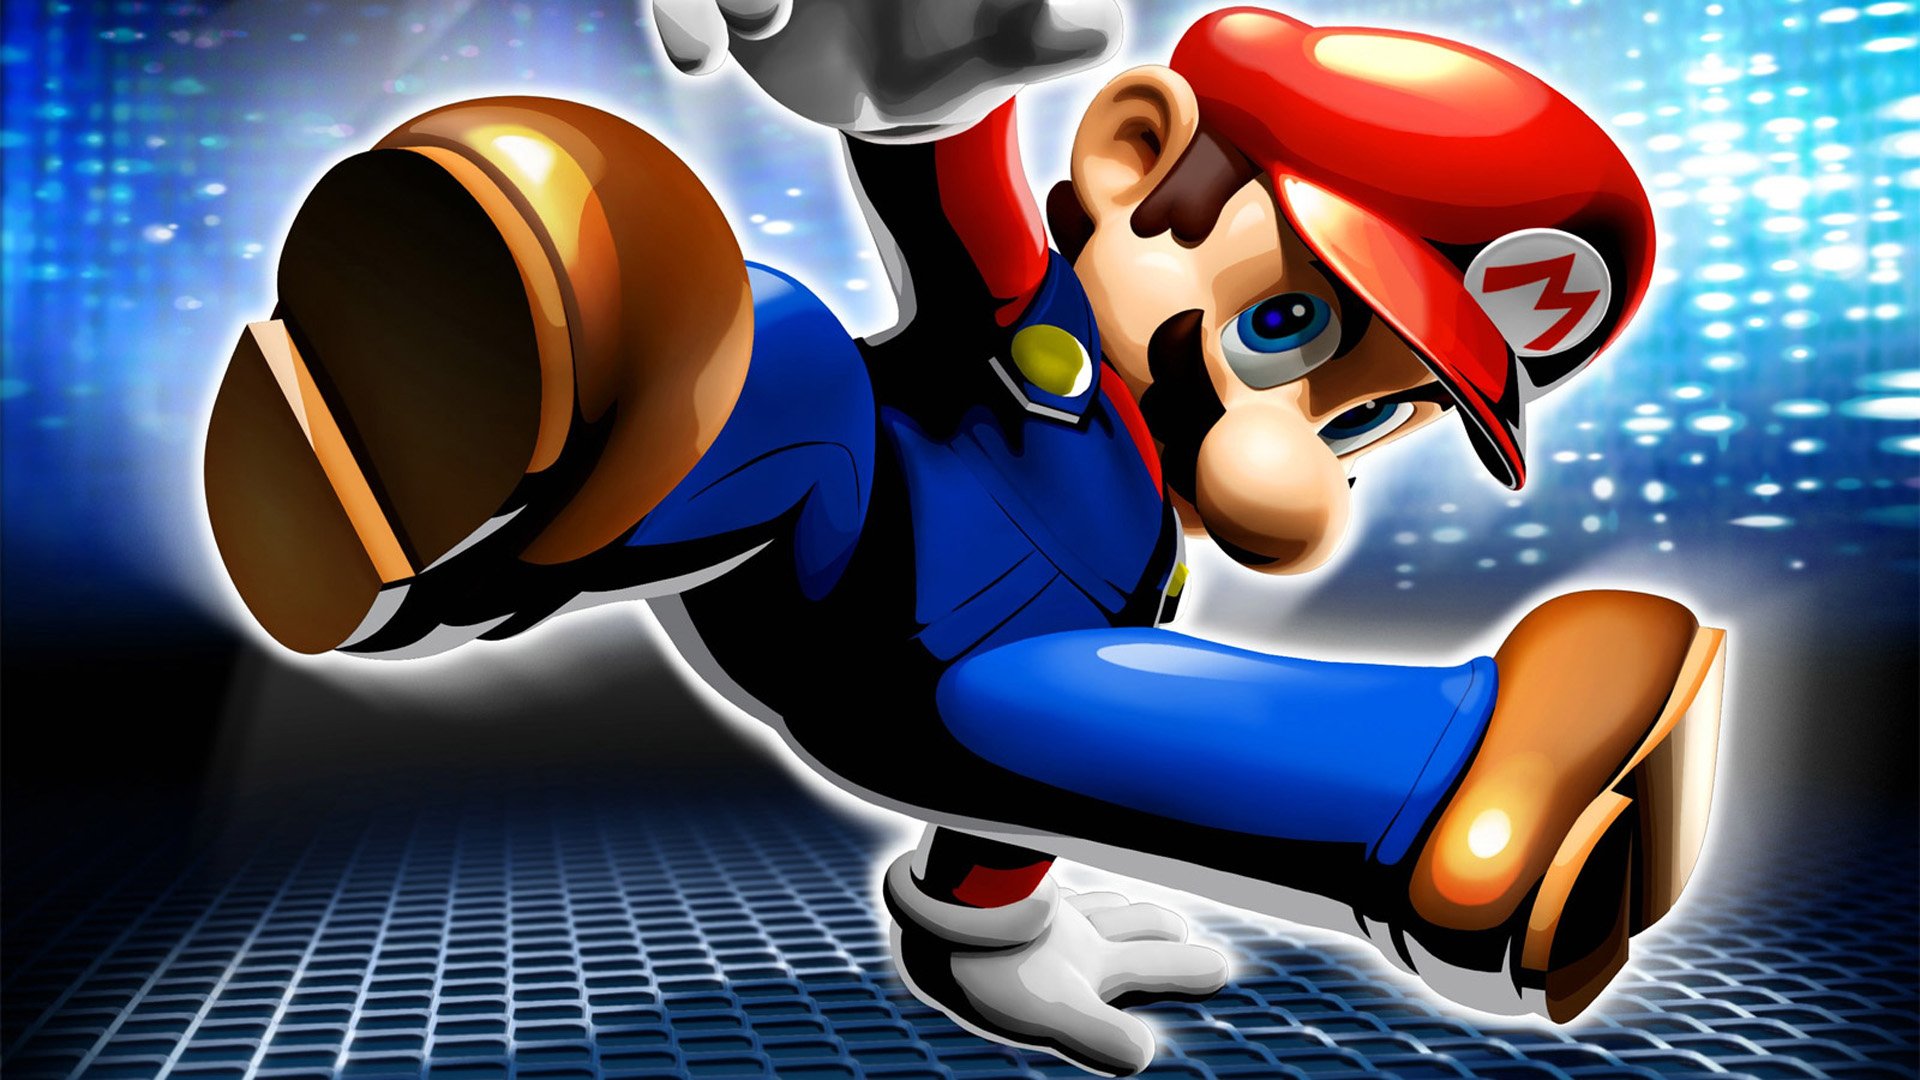 Super Mario 64 Papel De Parede Hd Plano De Fundo 1920x1080 Id